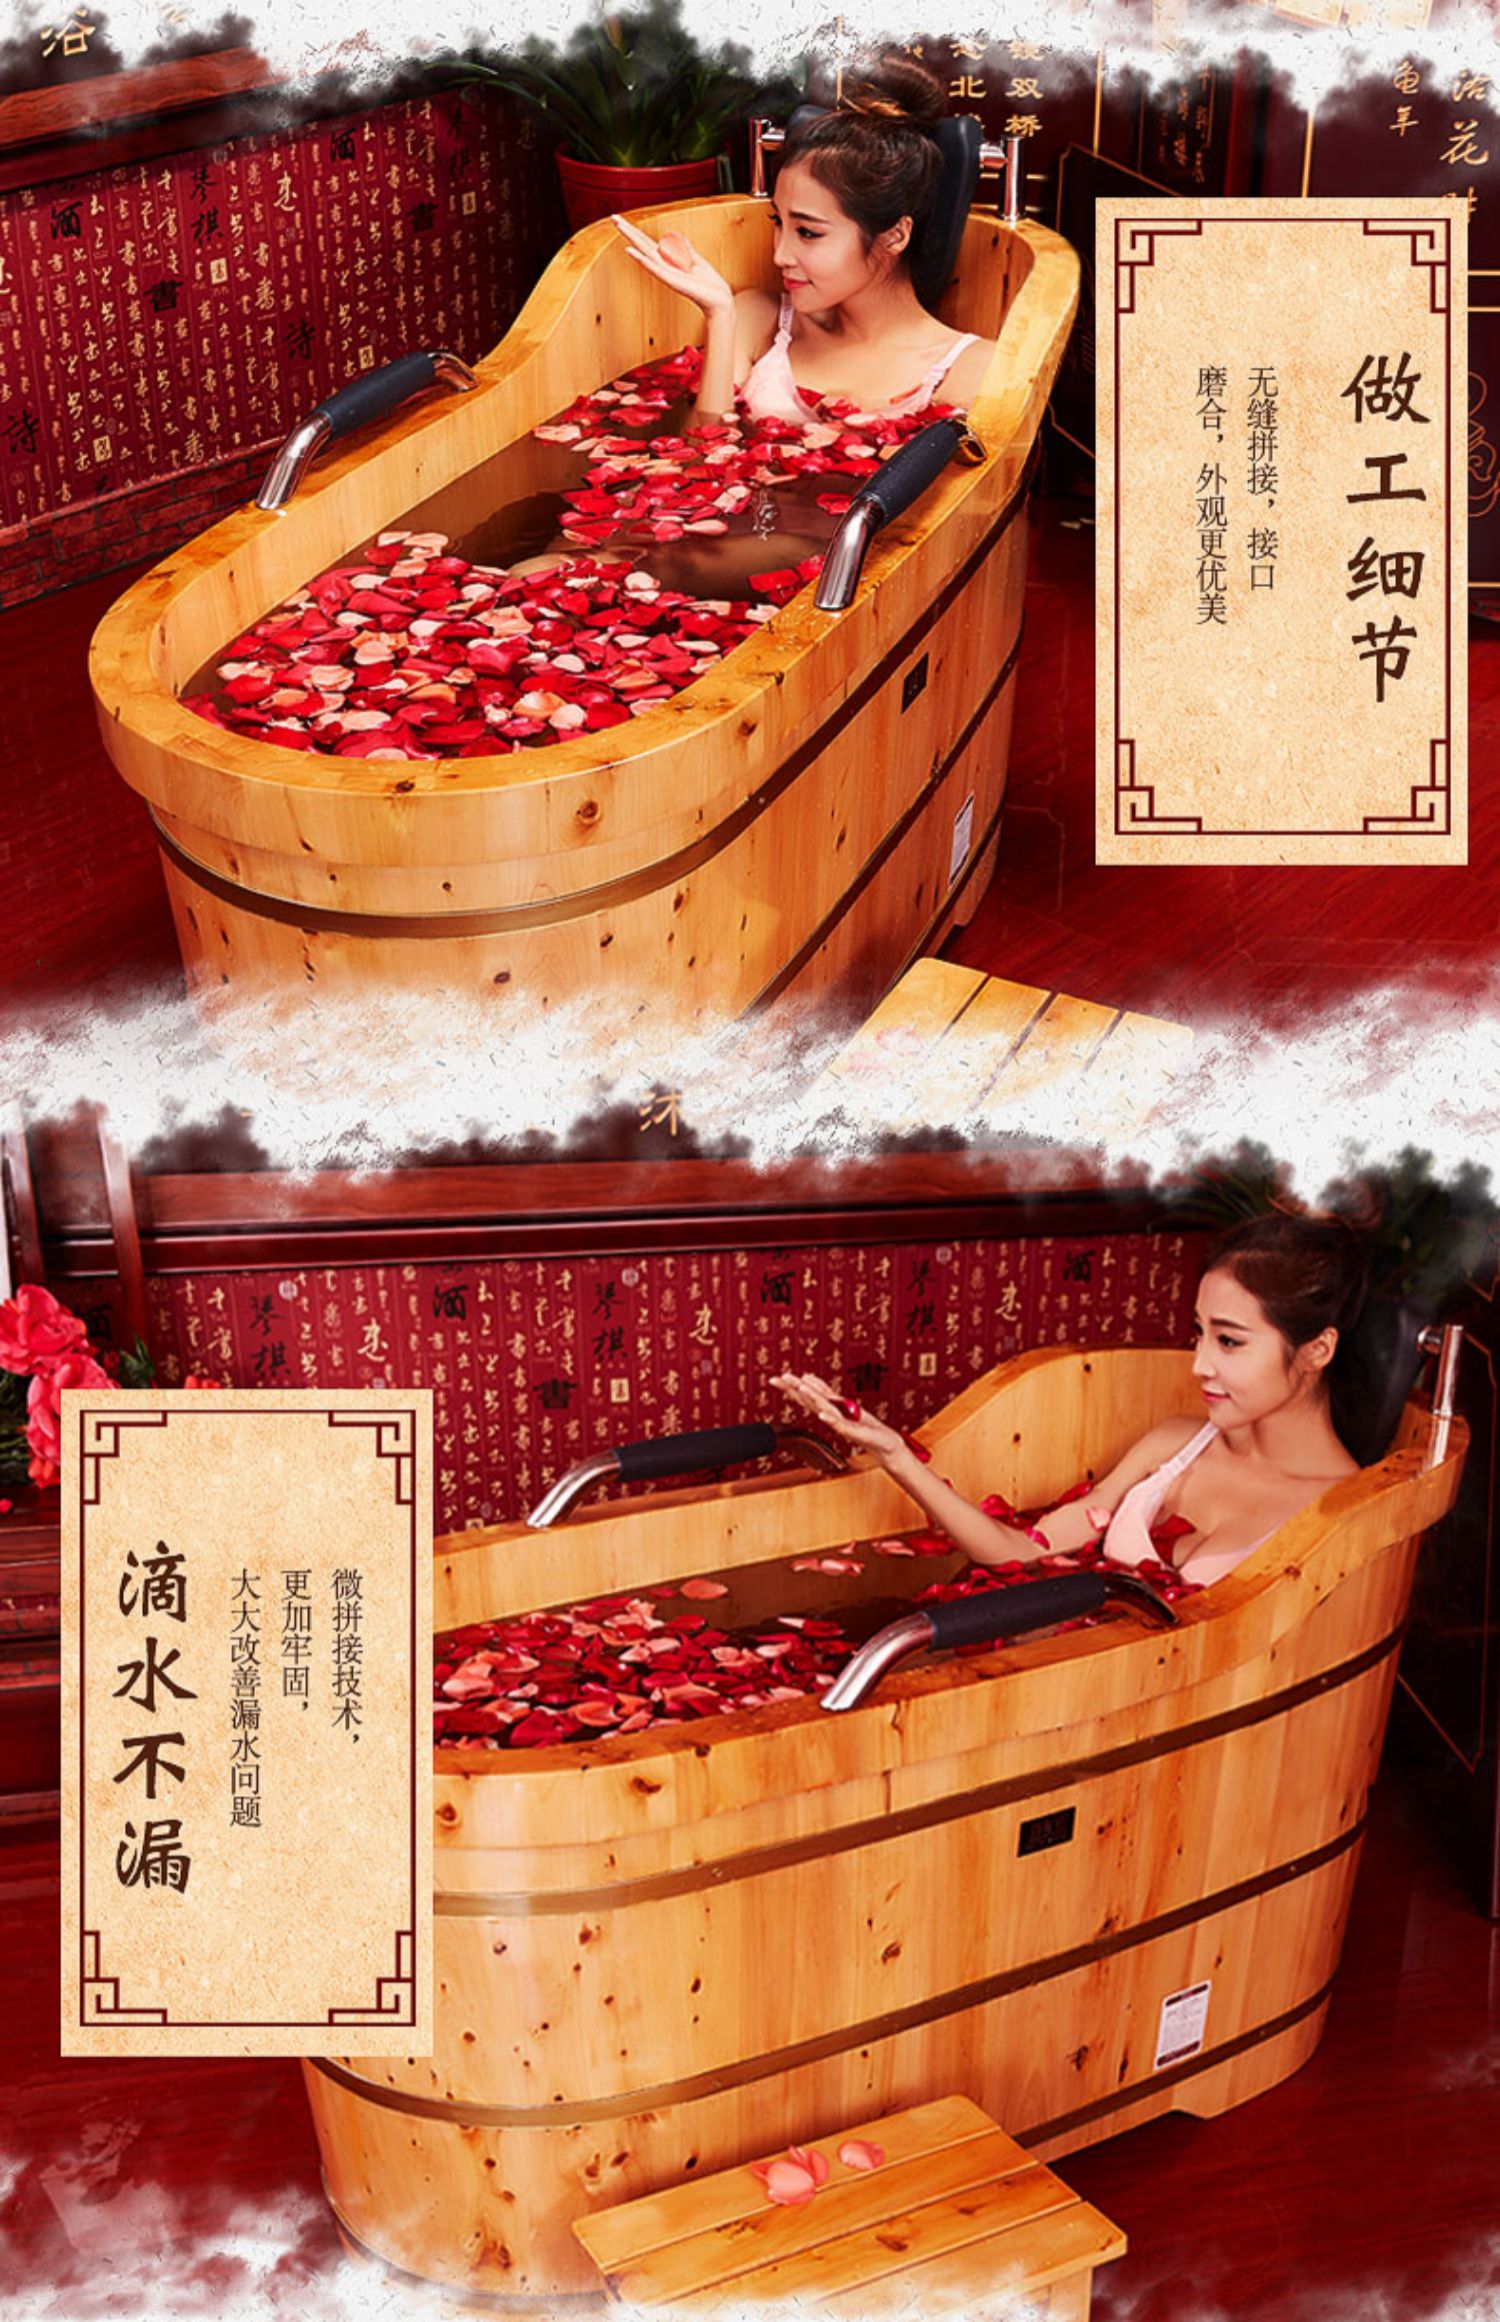 木桶浴广告设计图片图片